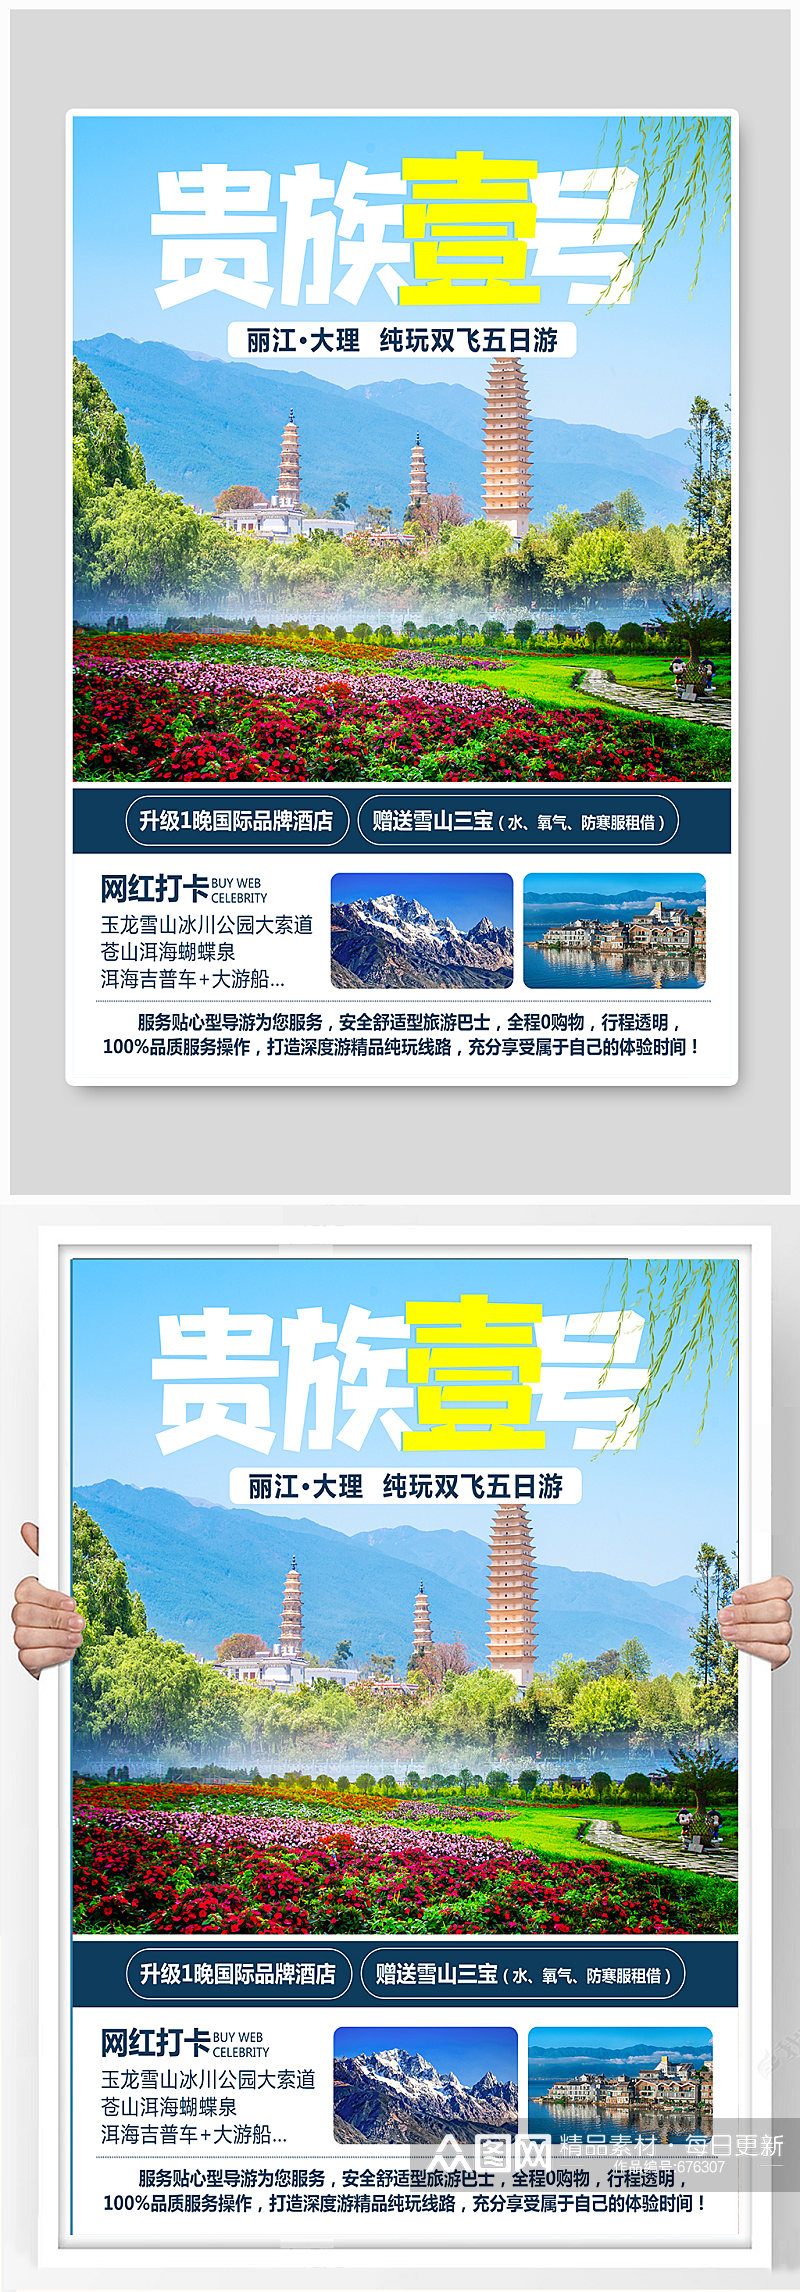 云南旅游宣传海报素材